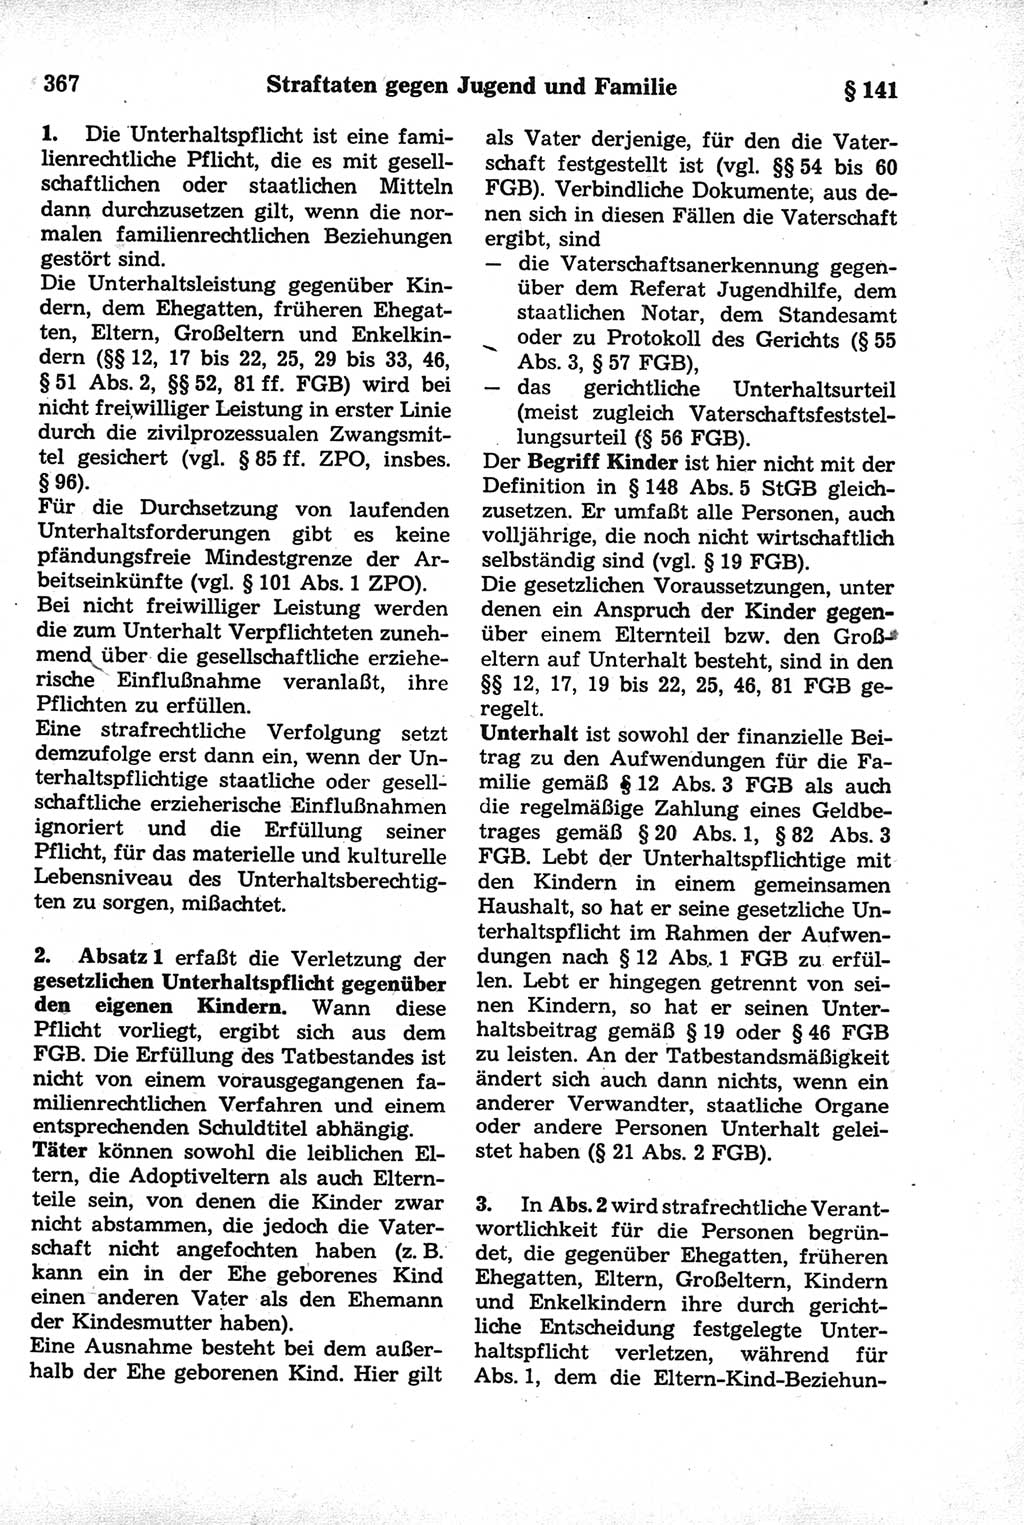 Strafrecht der Deutschen Demokratischen Republik (DDR), Kommentar zum Strafgesetzbuch (StGB) 1981, Seite 367 (Strafr. DDR Komm. StGB 1981, S. 367)